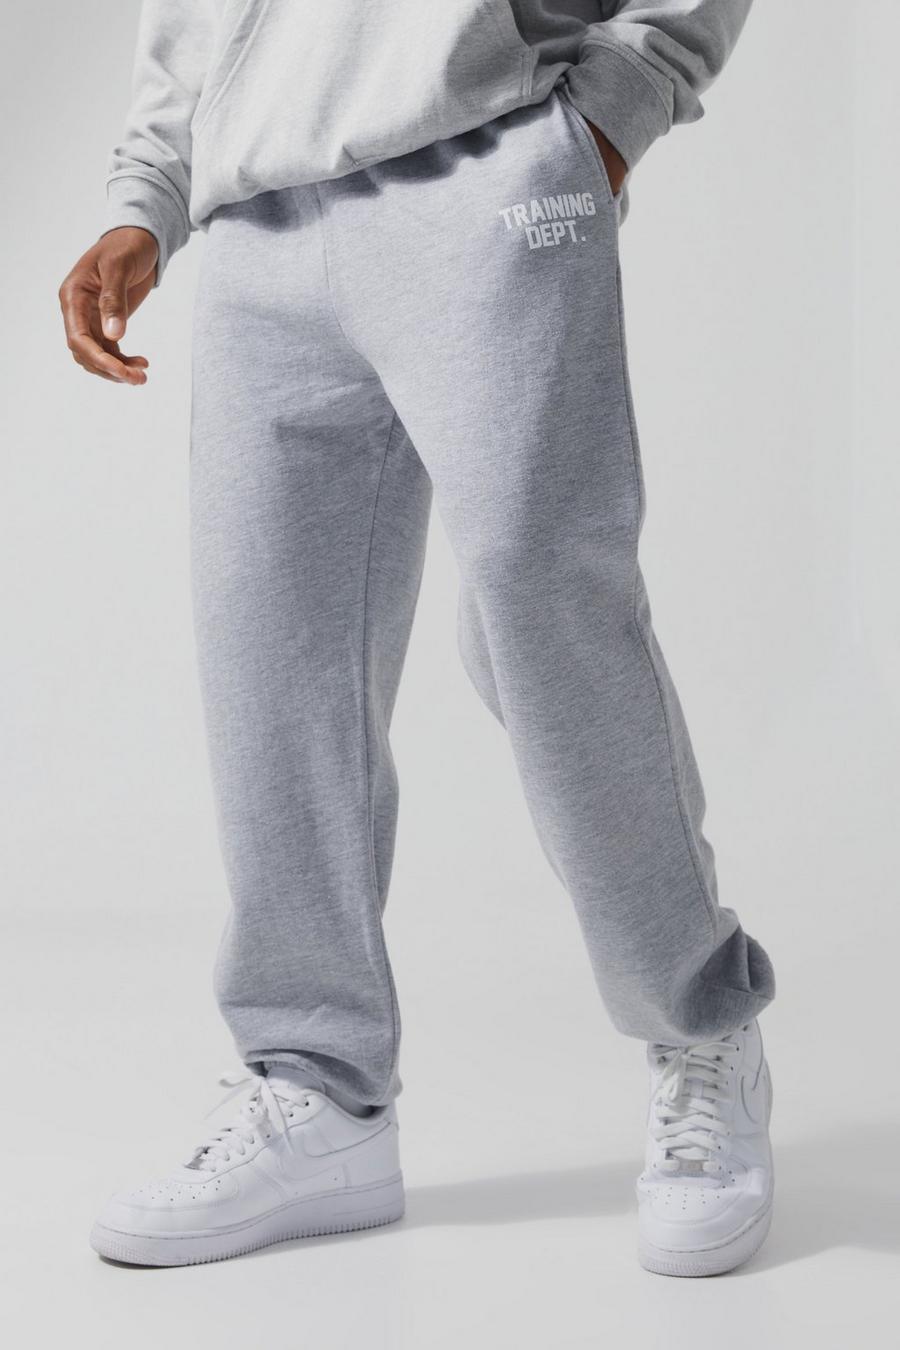 Pantalón deportivo MAN Active oversize Training Dept, Grey marl